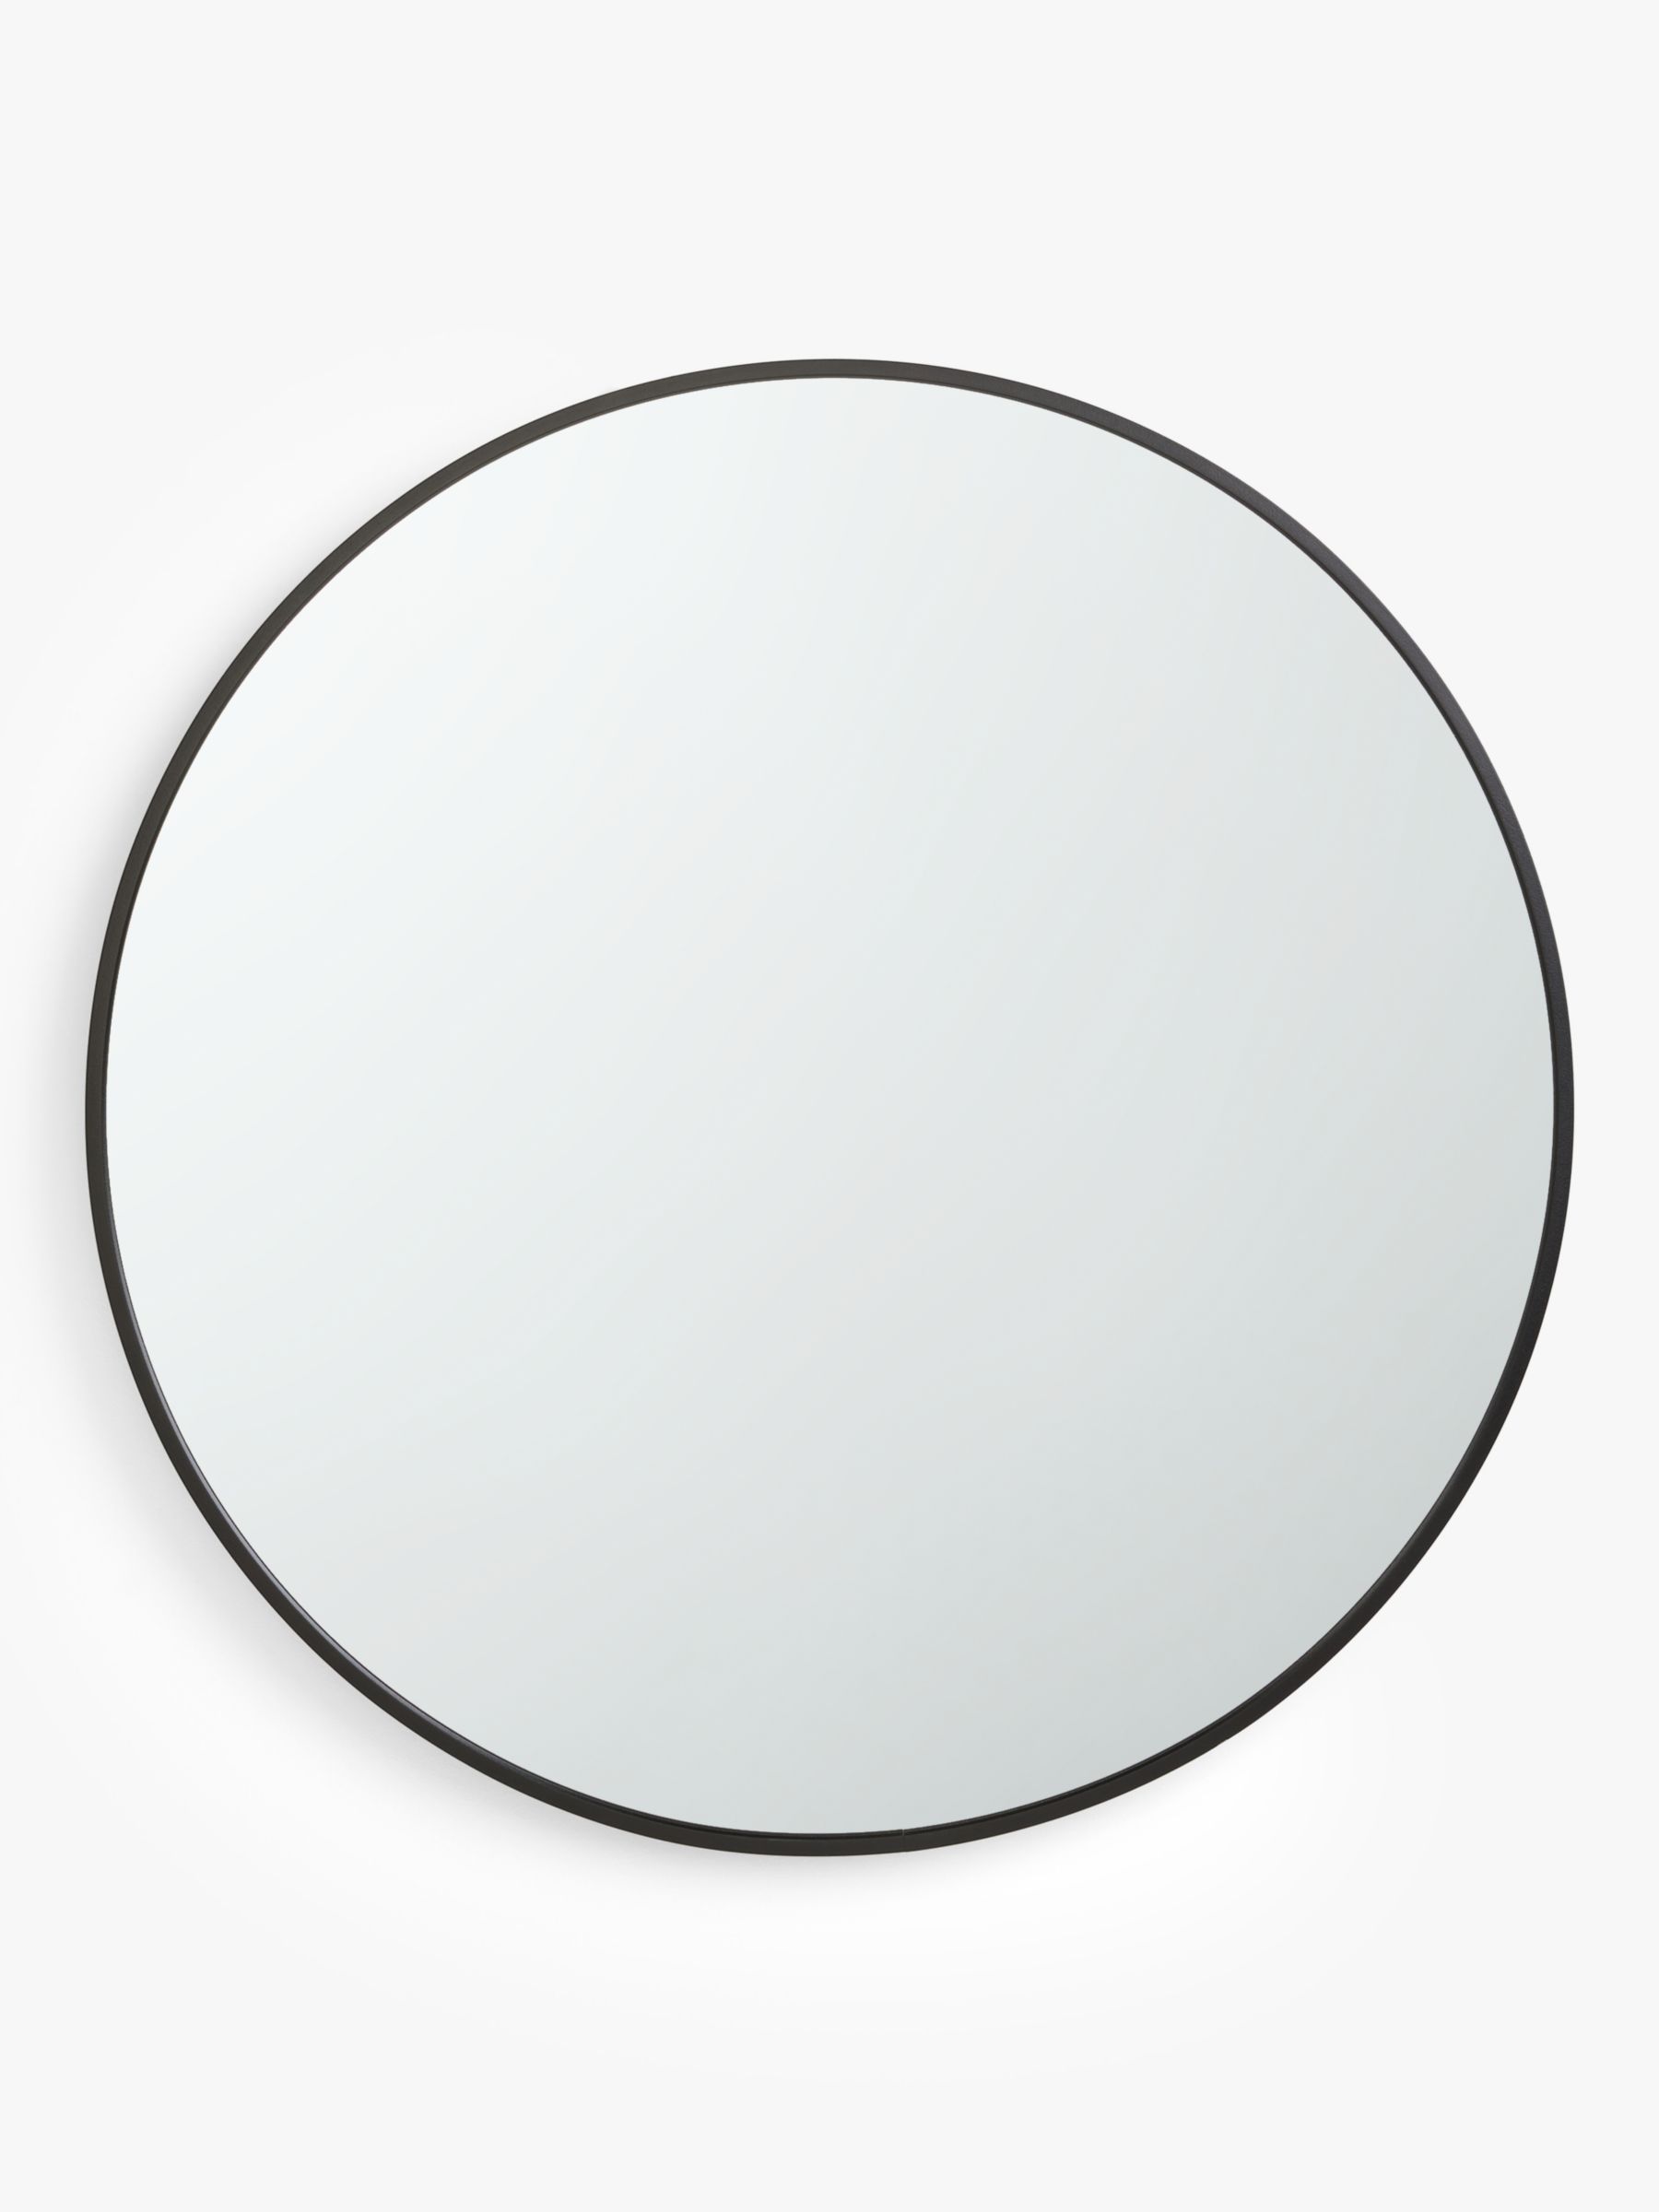 John Lewis ANYDAY Thin Metal Frame Round Wall Mirror, 65cm, Black | John Lewis (UK)